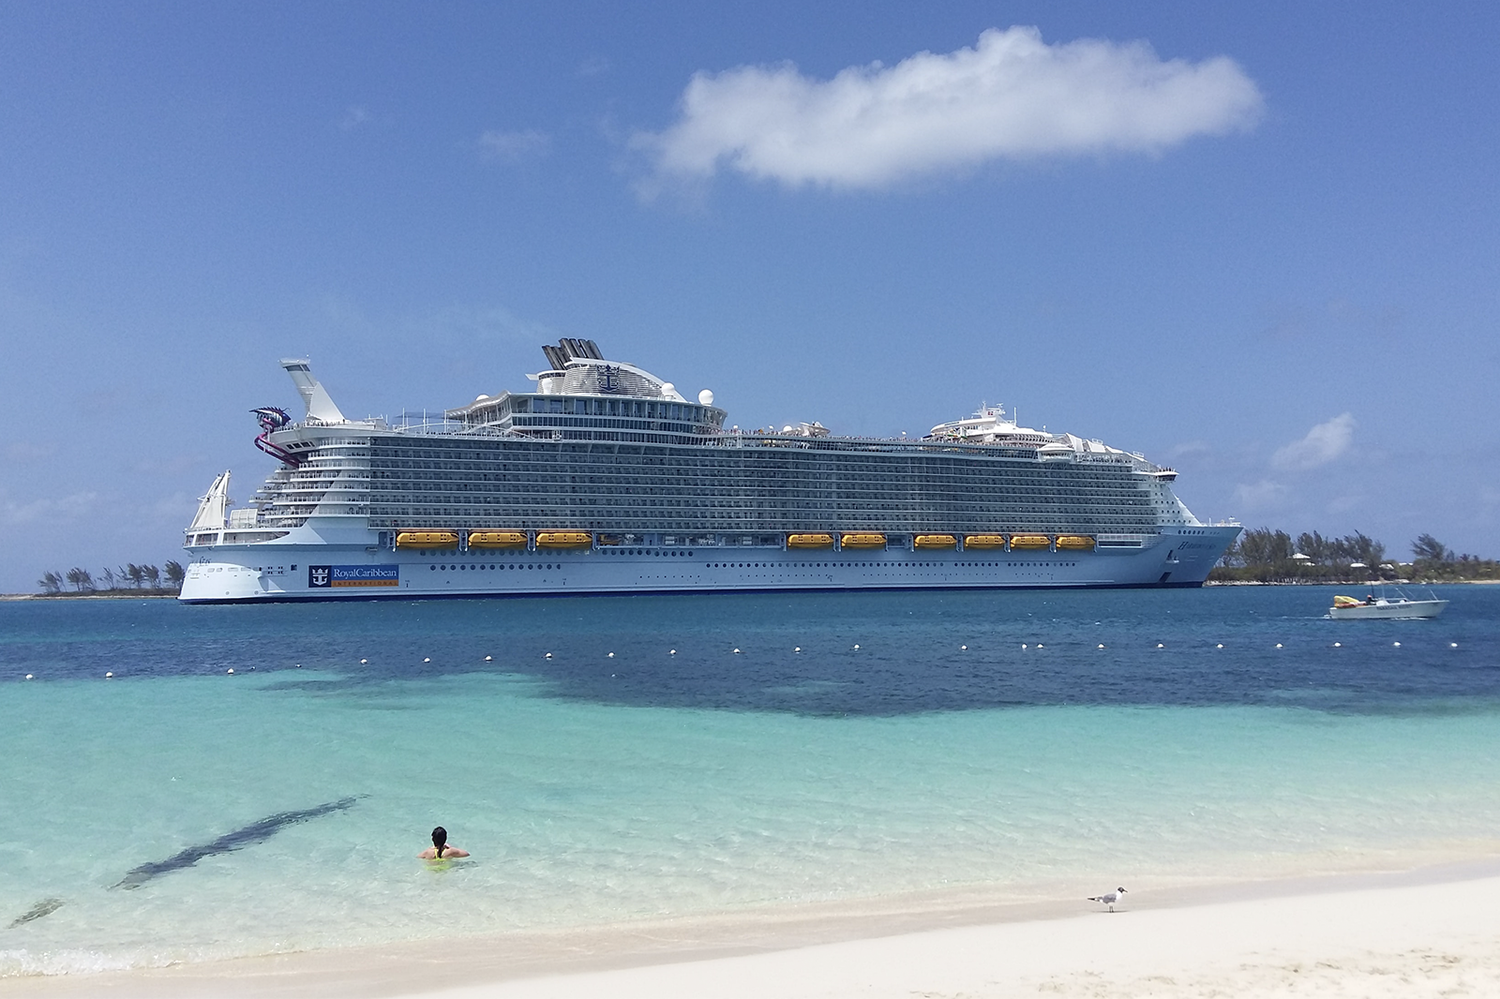 Royal Caribbean cruise ship docked near a beach on a sunny day.